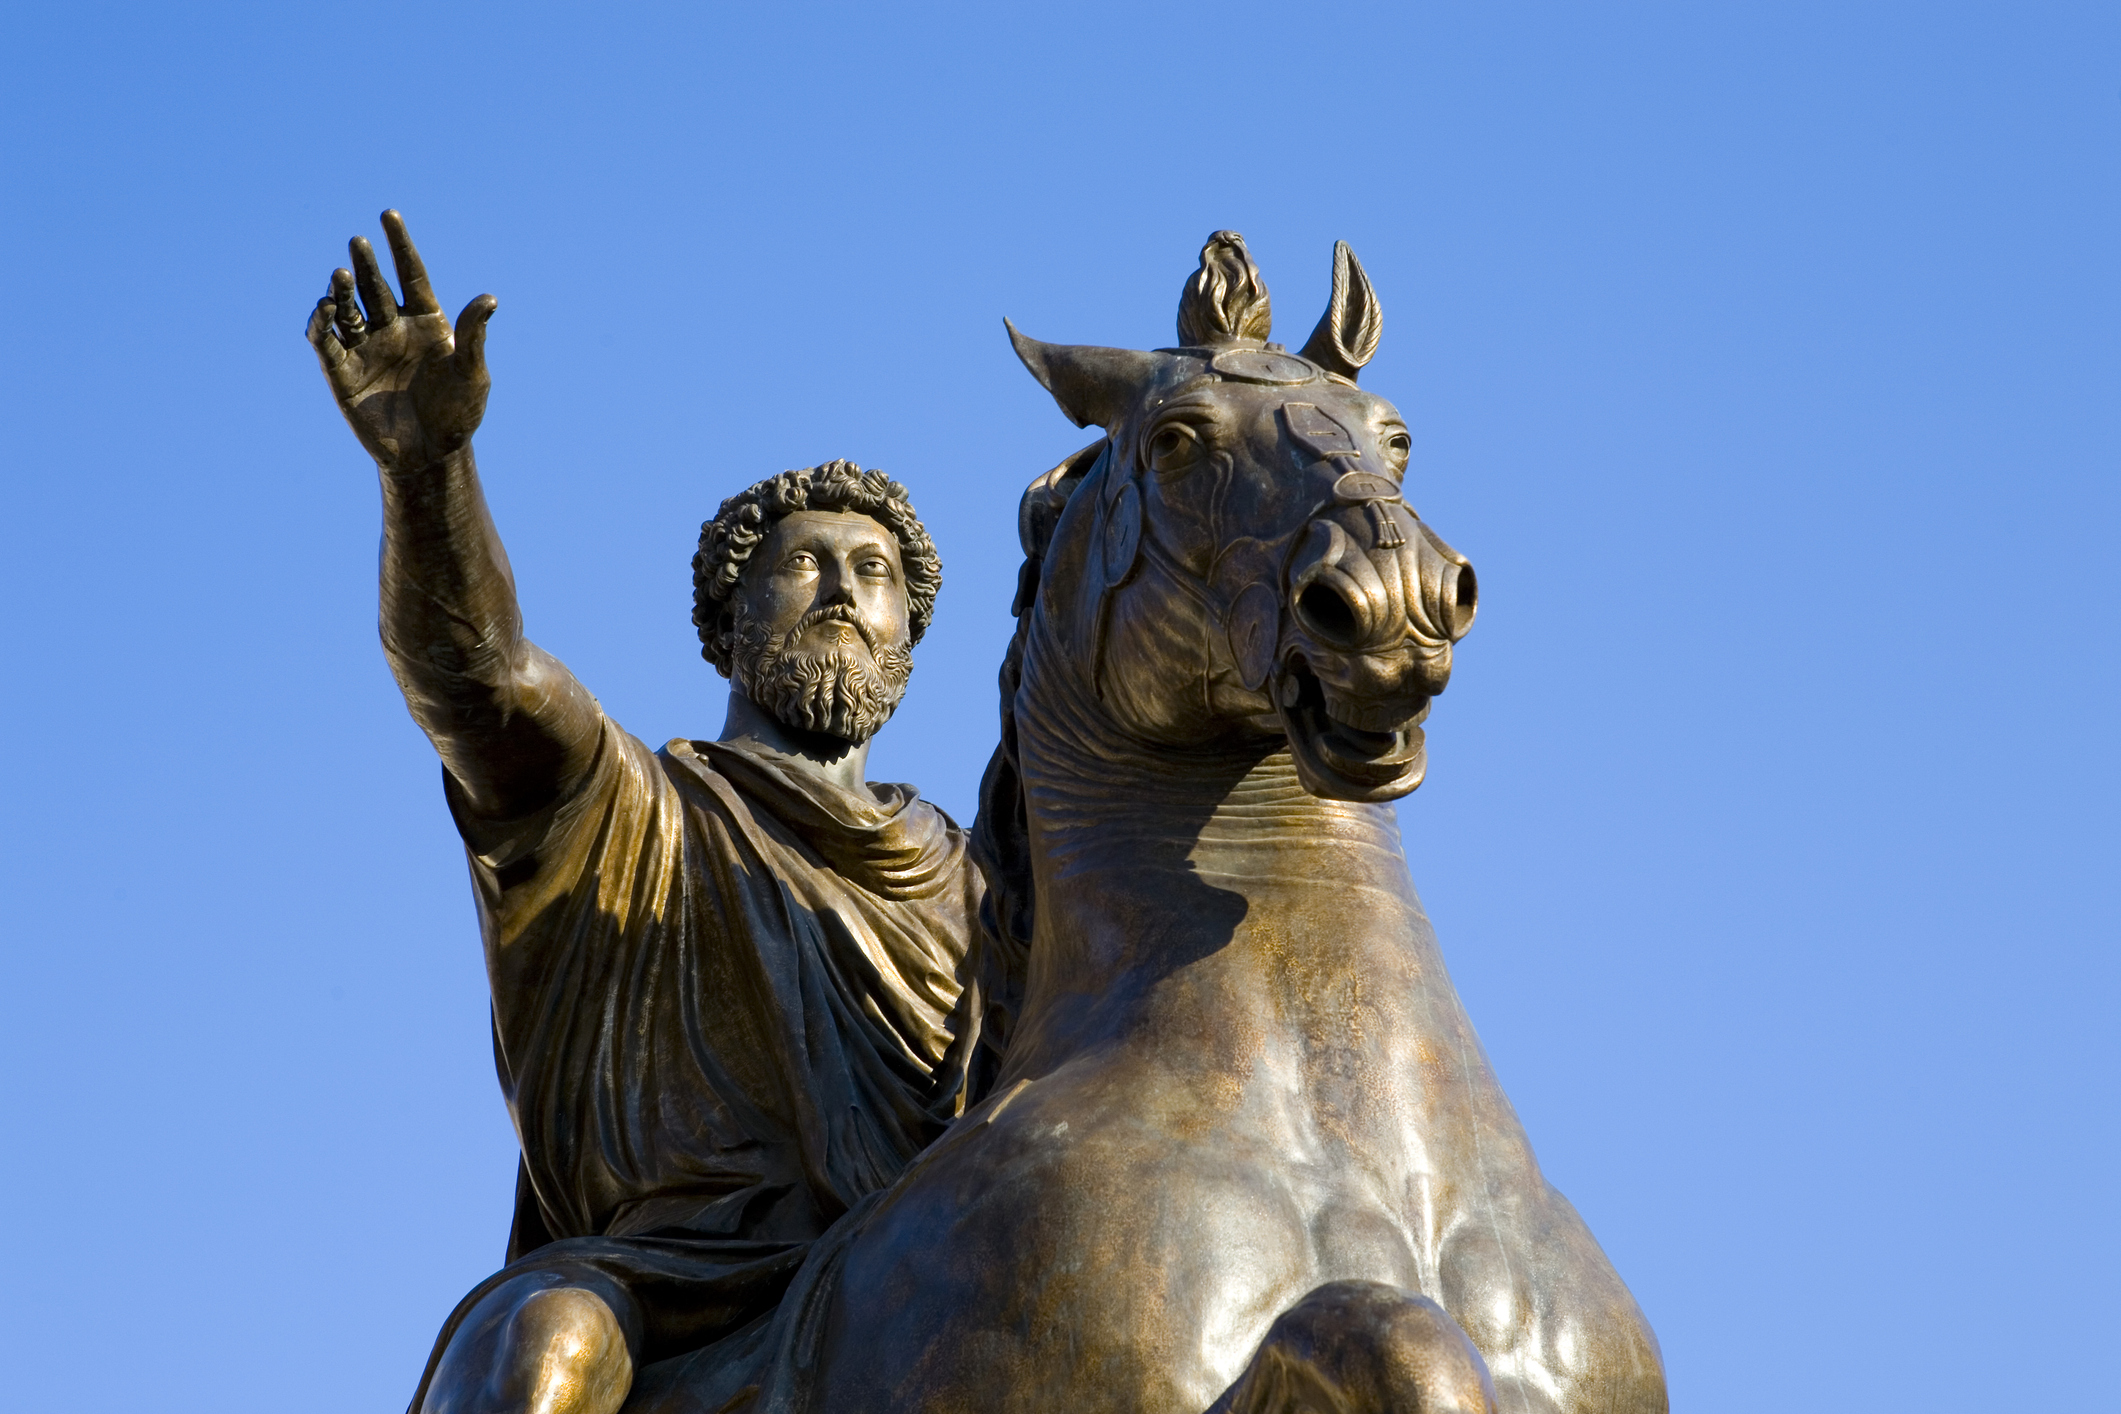 Marcus Aurelius statue, Capitoline Hill, Rome, Italy